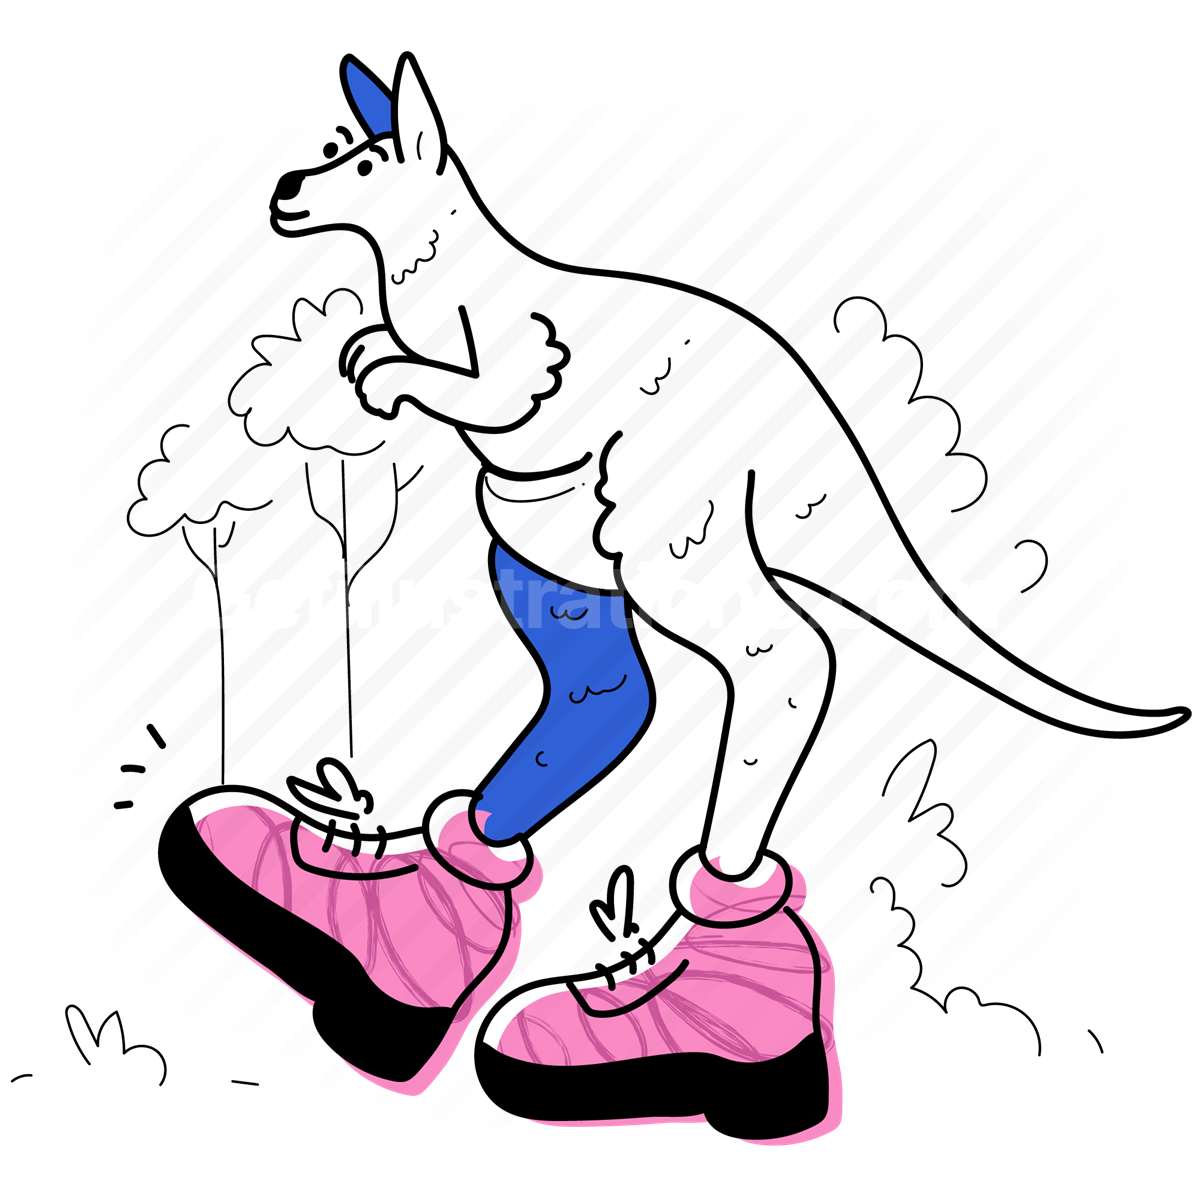 kangaroo, animal, wildlife, nature, shoe, footwear, boots